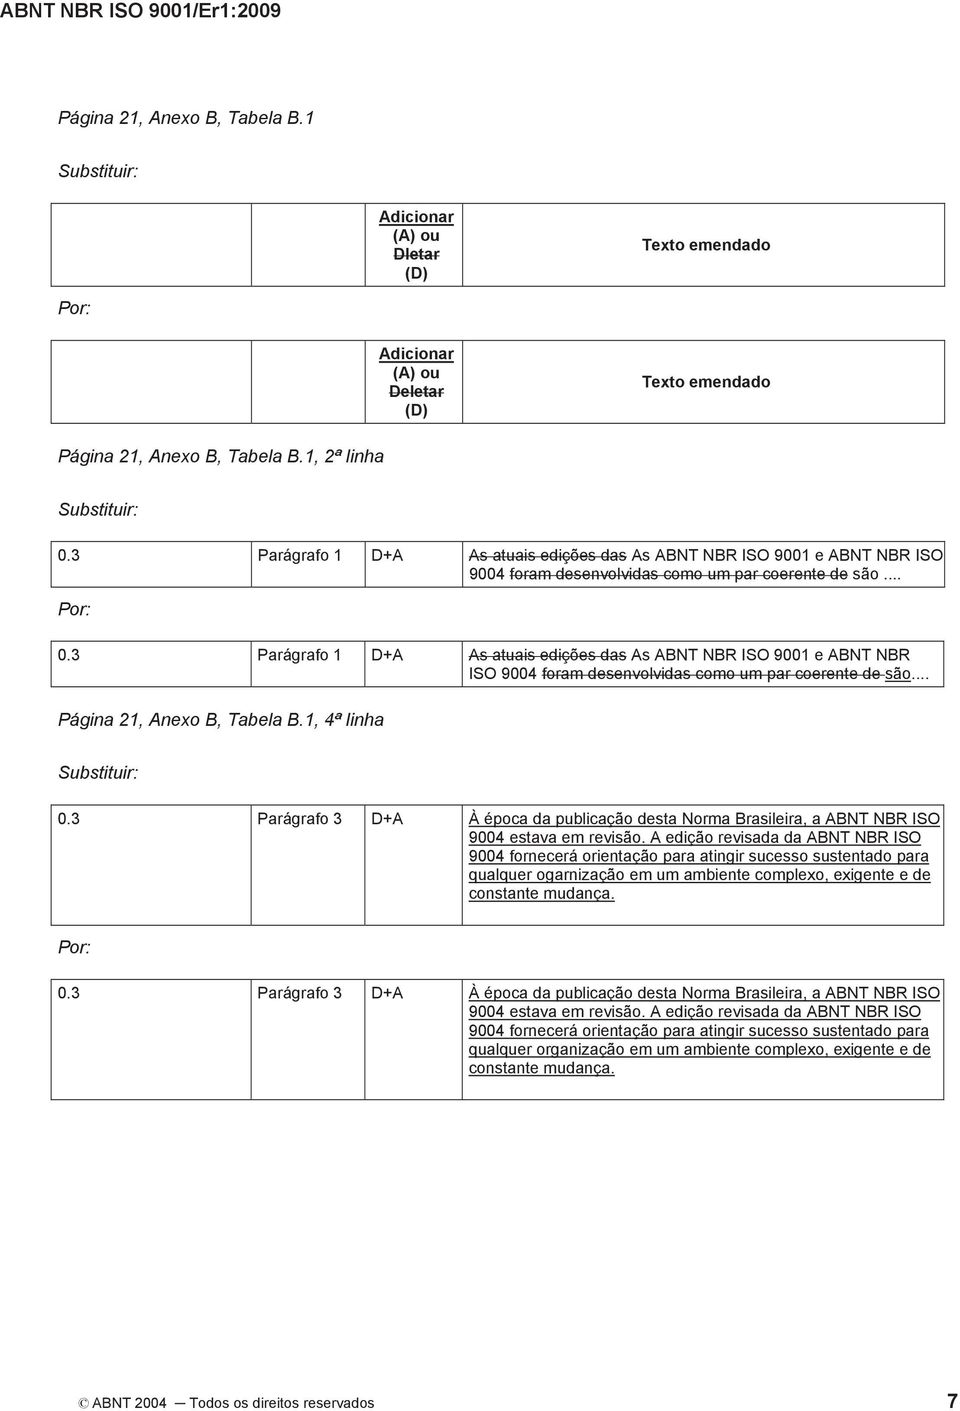 3 Parágrafo 1 D+A As atuais edições das As ABNT NBR ISO 9001 e ABNT NBR ISO 9004 foram desenvolvidas como um par coerente de são... Página 21, Anexo B, Tabela B.1, 4ª linha 0.